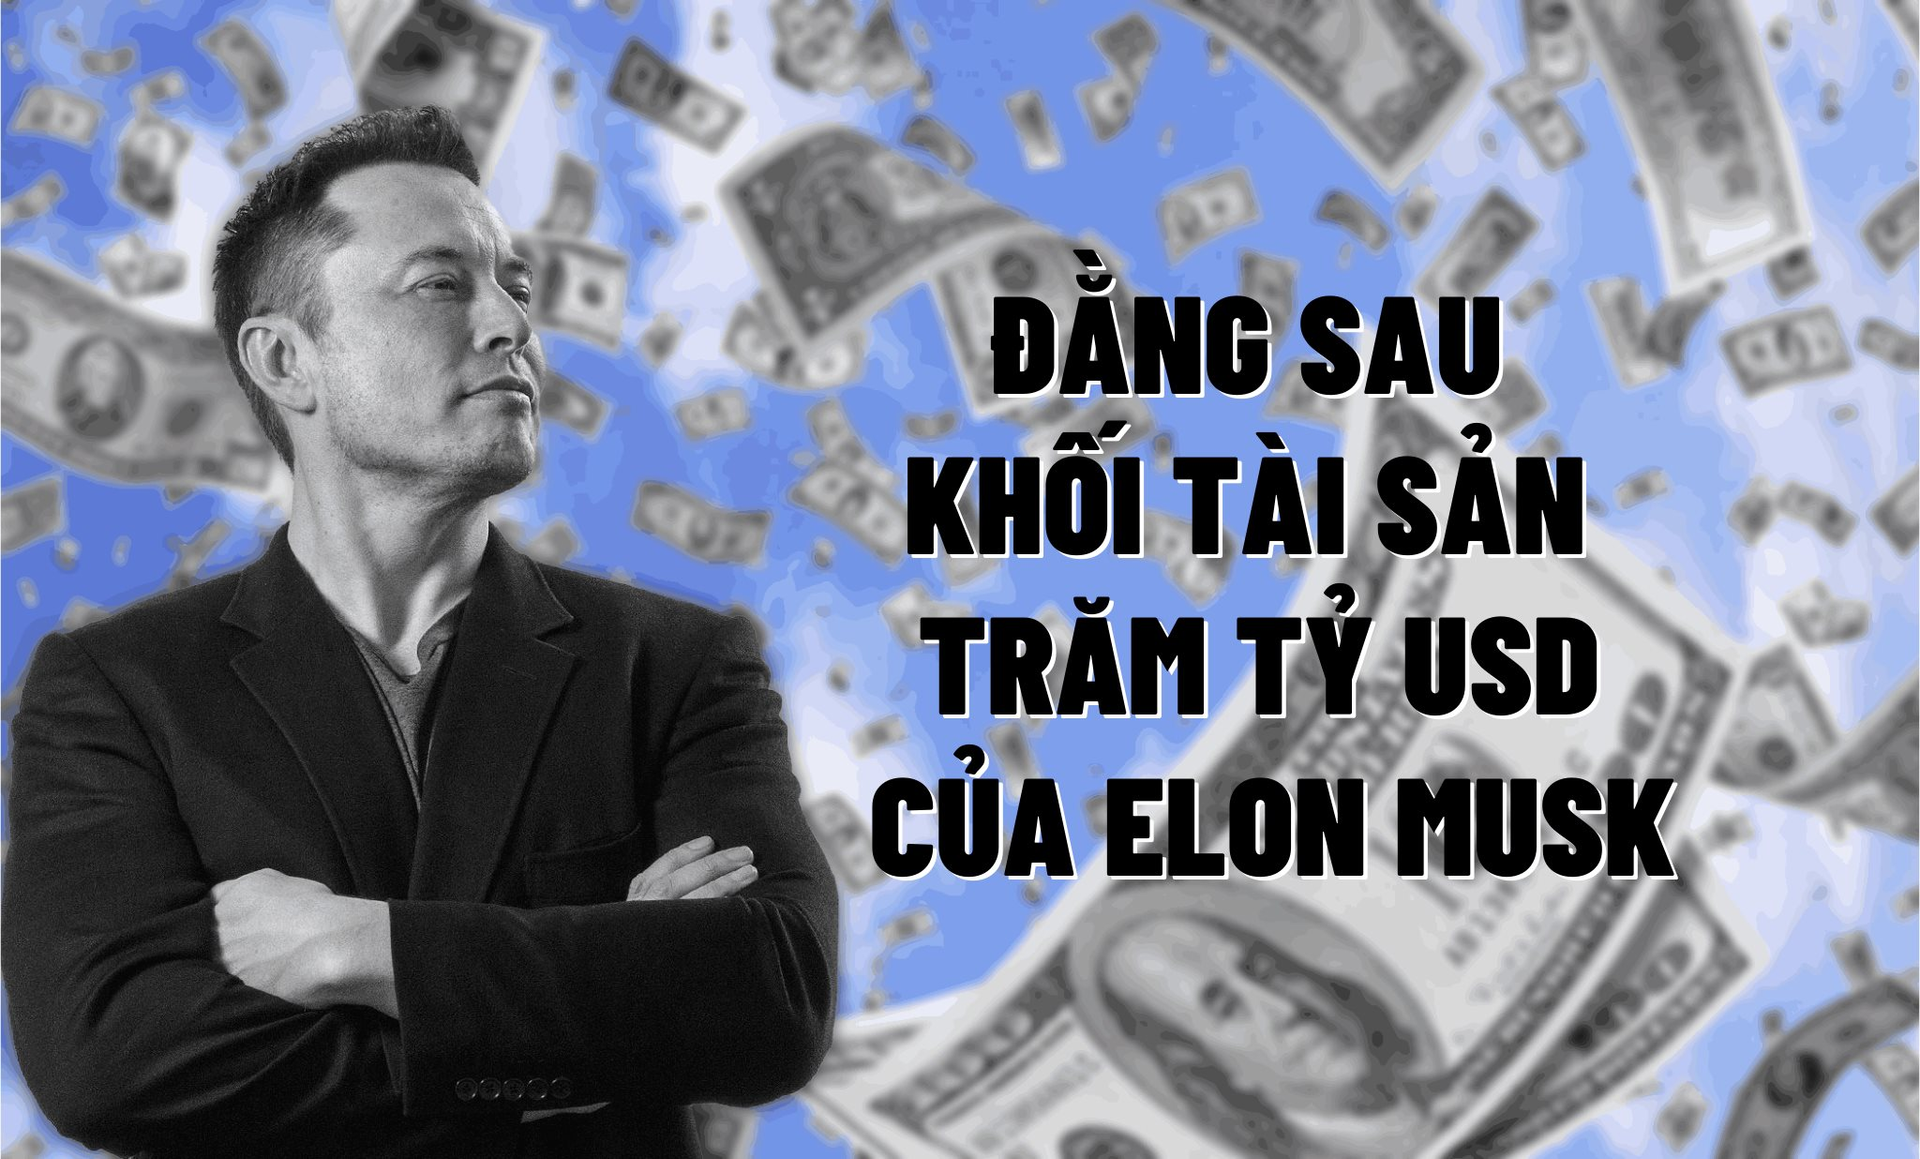 Đằng sau khối tài sản trăm tỷ USD của Elon Musk: Tiền mặt và các khoản đầu tư chỉ chiếm 2,5 tỷ USD, phần lớn… chỉ ở trên giấy